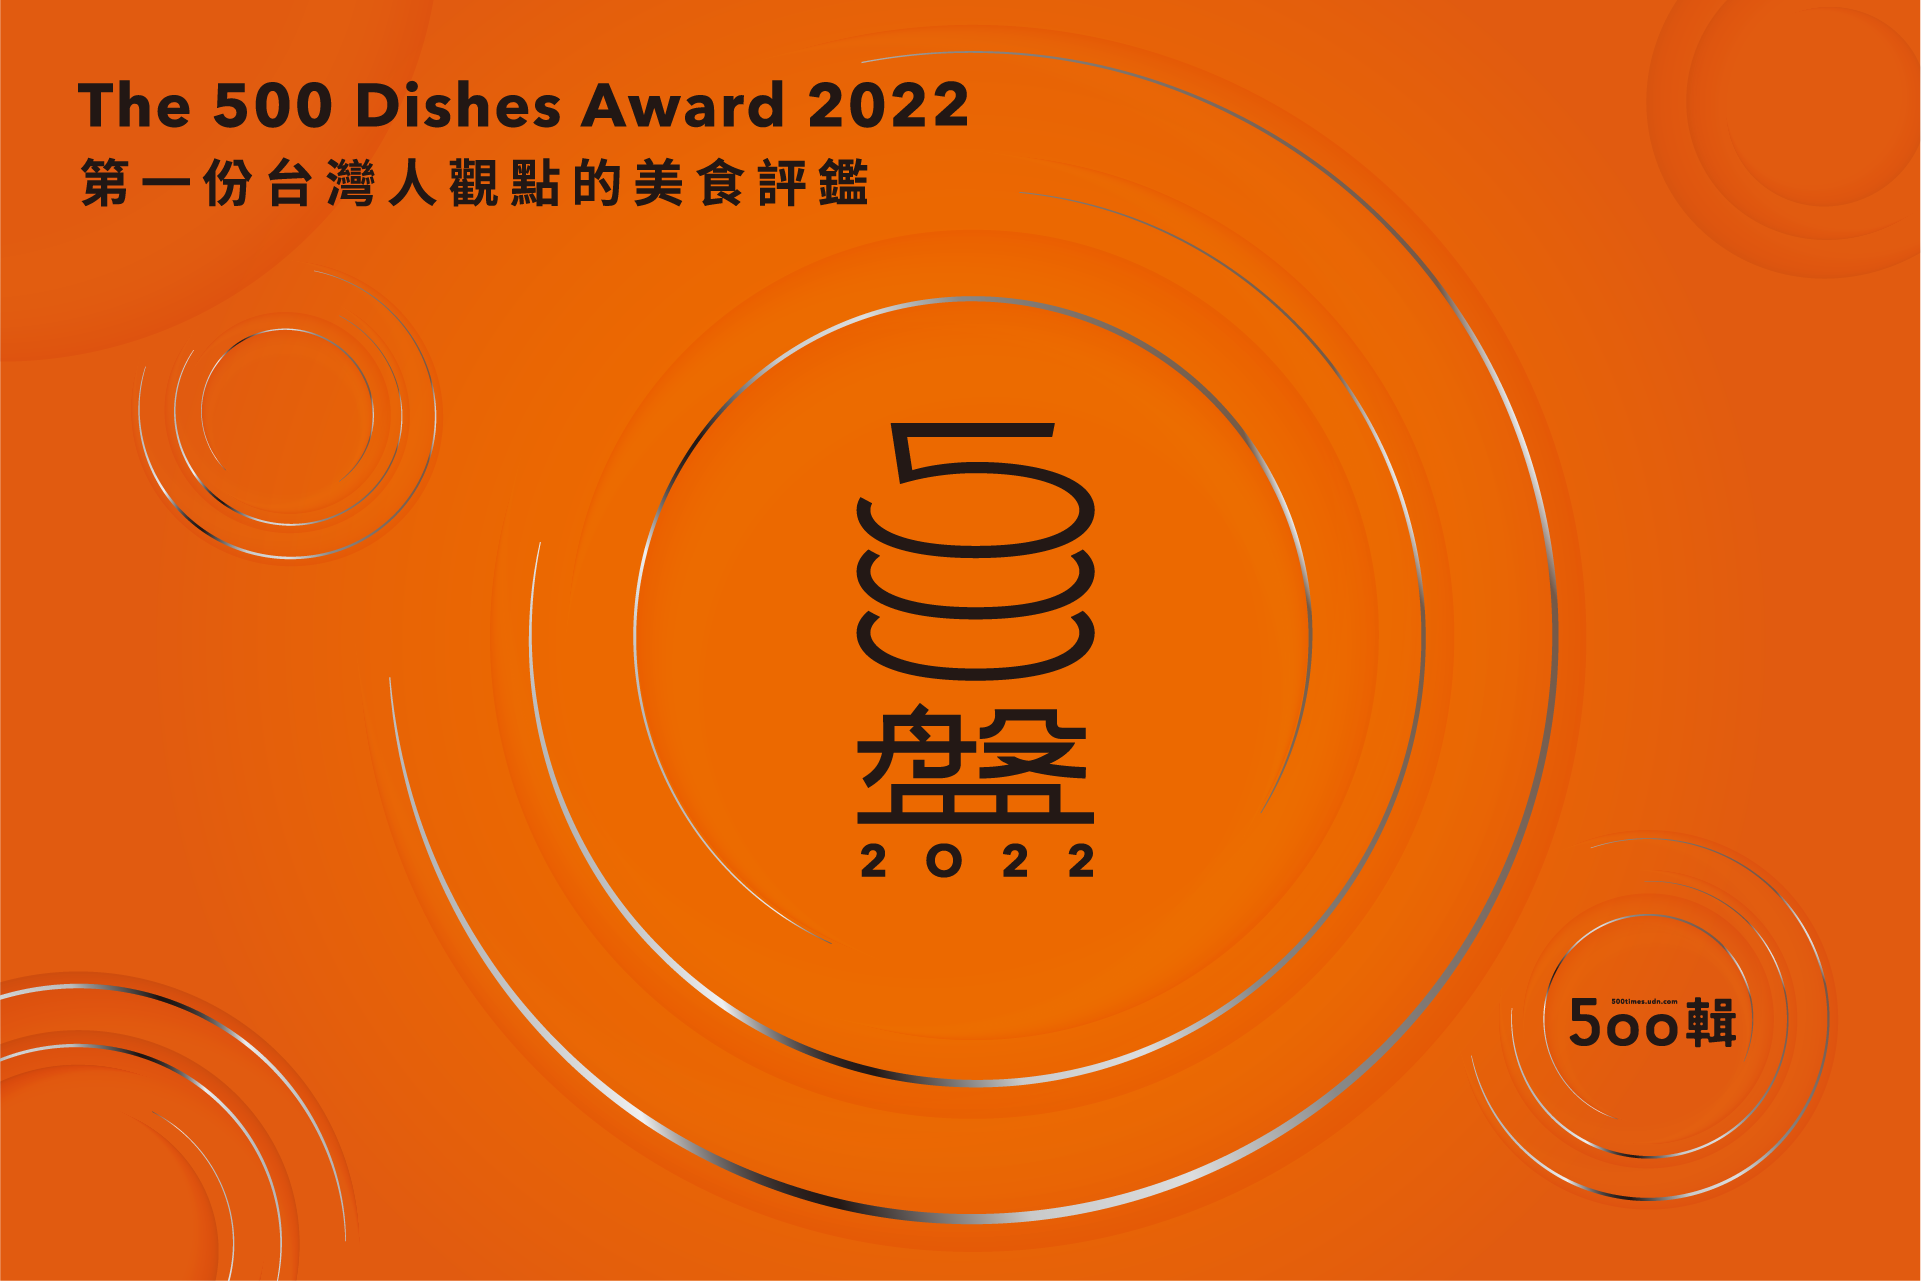 專屬台灣人美食評鑑「第二屆500盤」結果揭曉 首度進榜「朧粵」奪15個盤子成大贏家